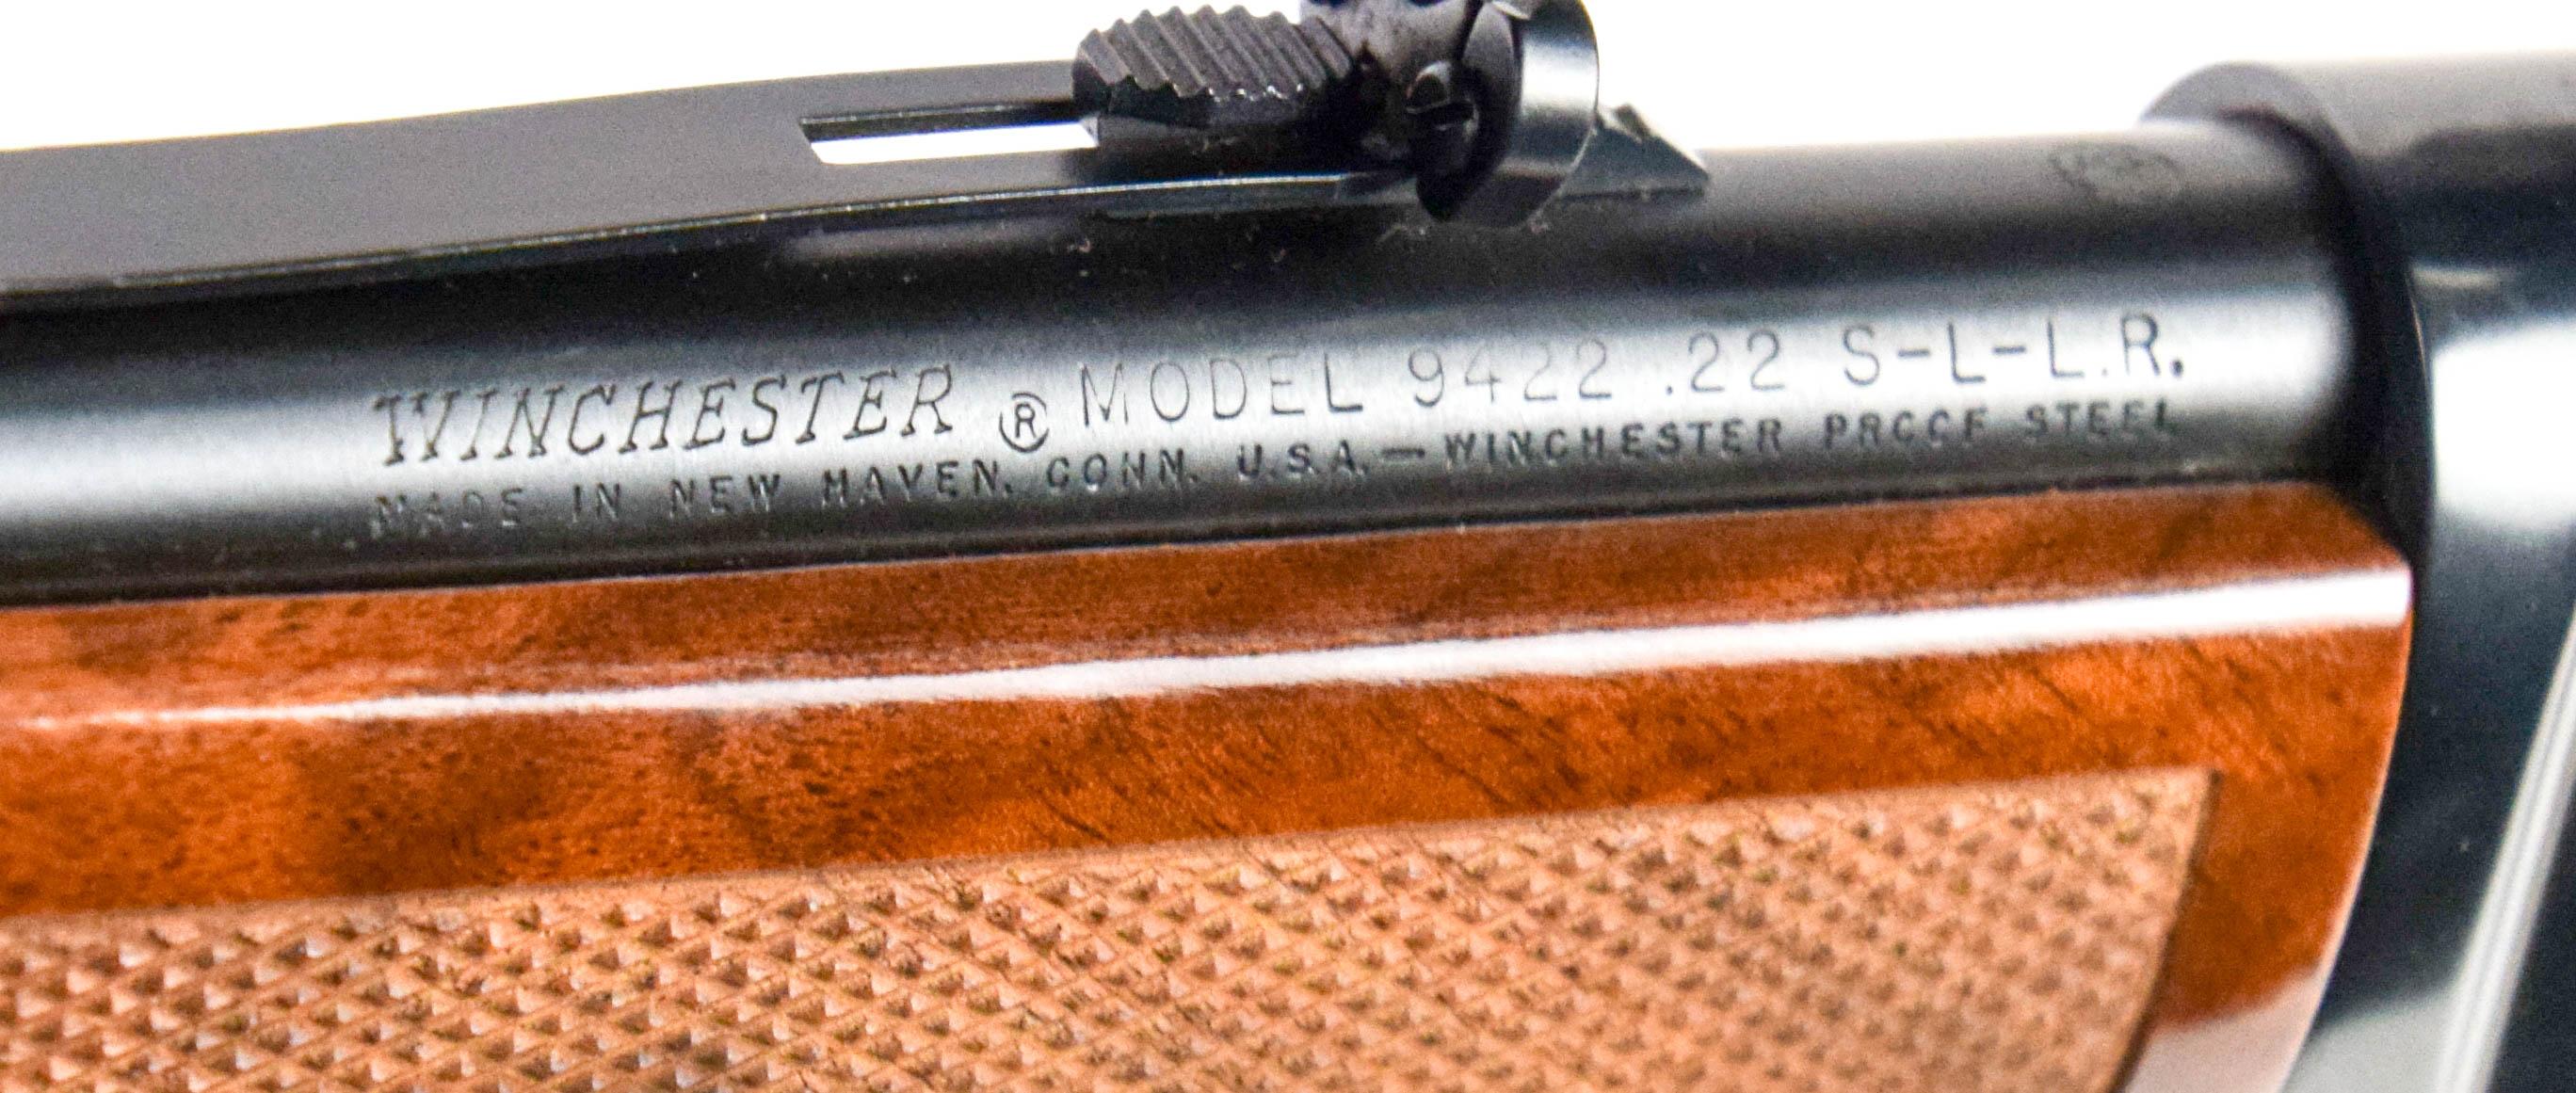 Winchester Model 9422 High-Grade .22 sl lr